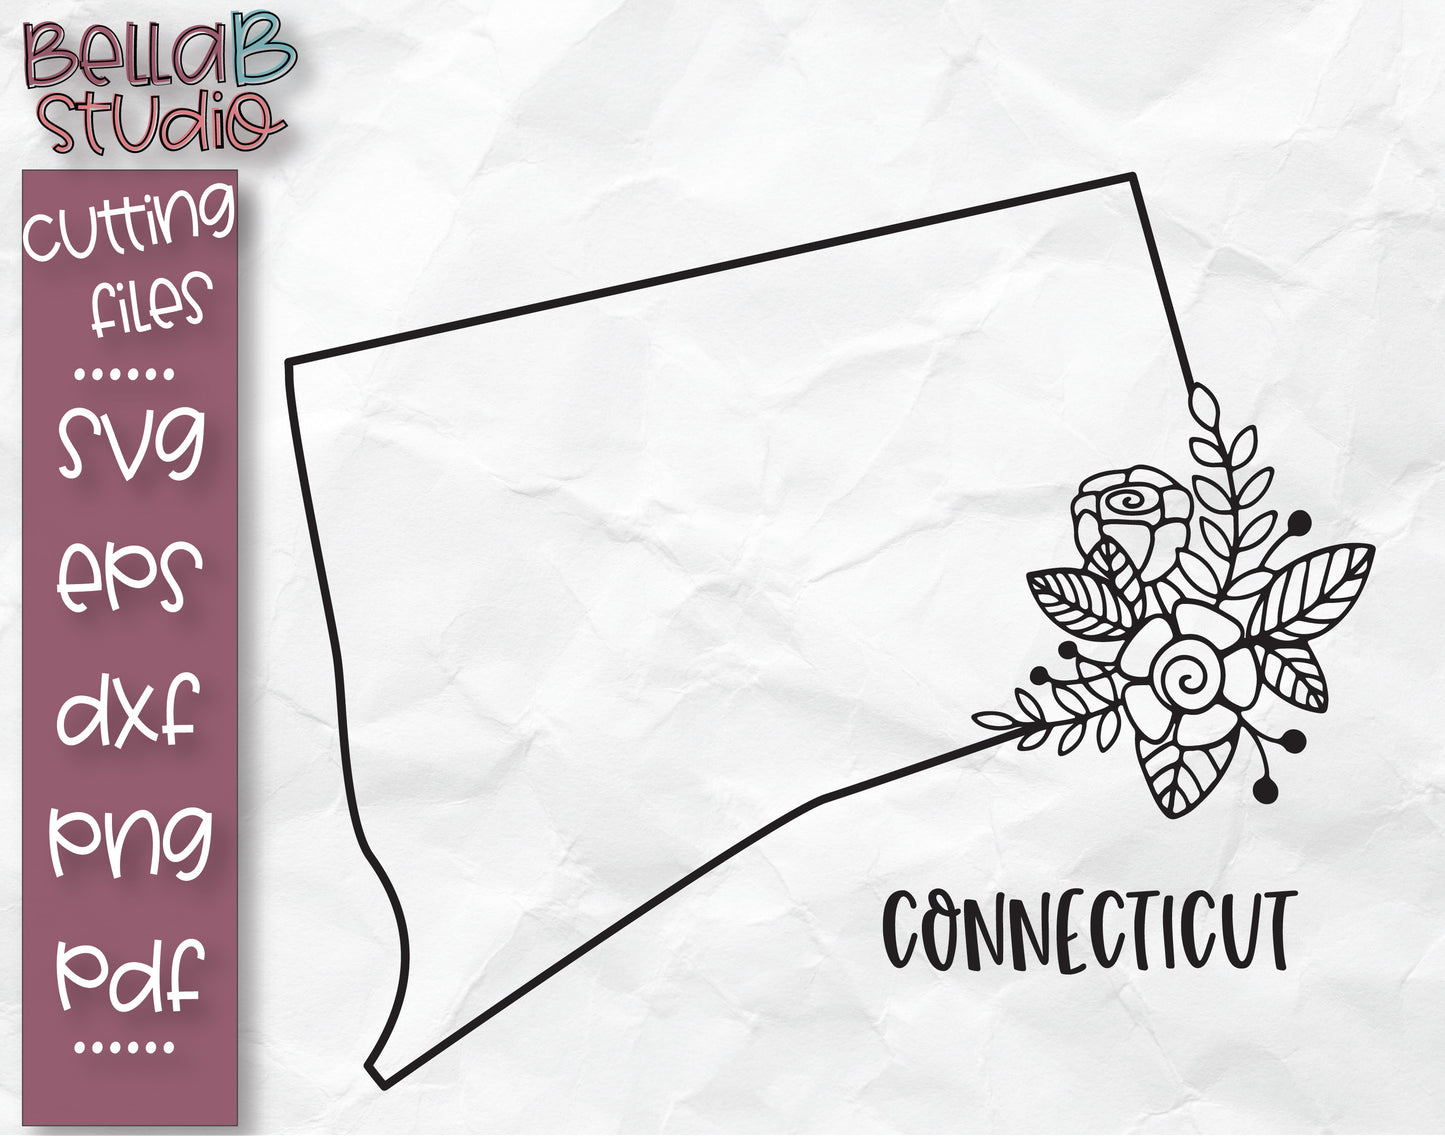 Floral Connecticut Map SVG File